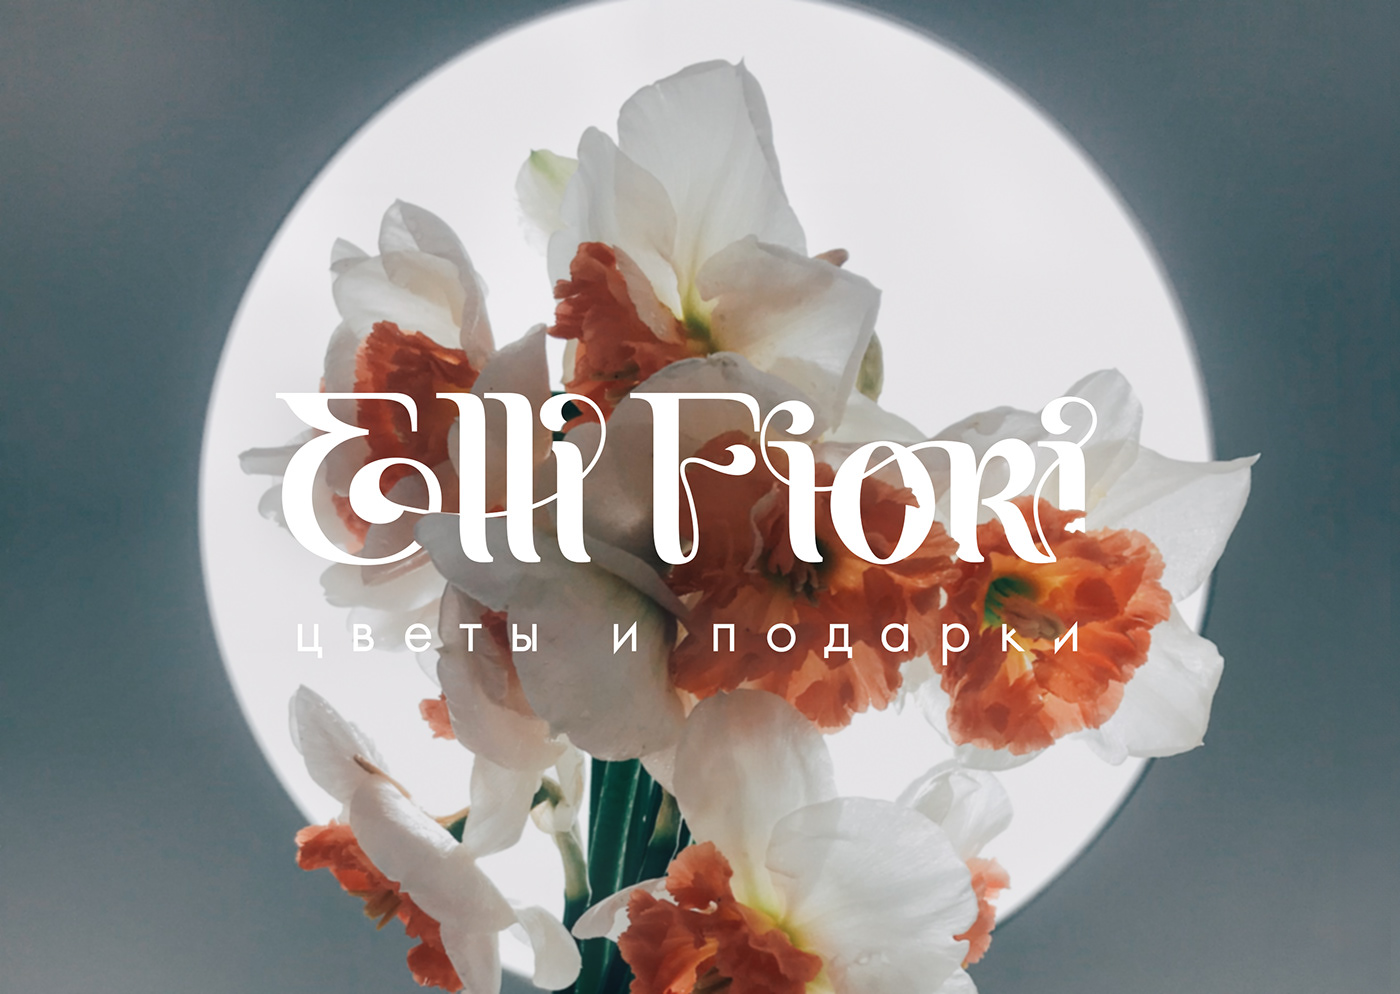 Дизайн логотипа для цветочного бутика Elli Fiori